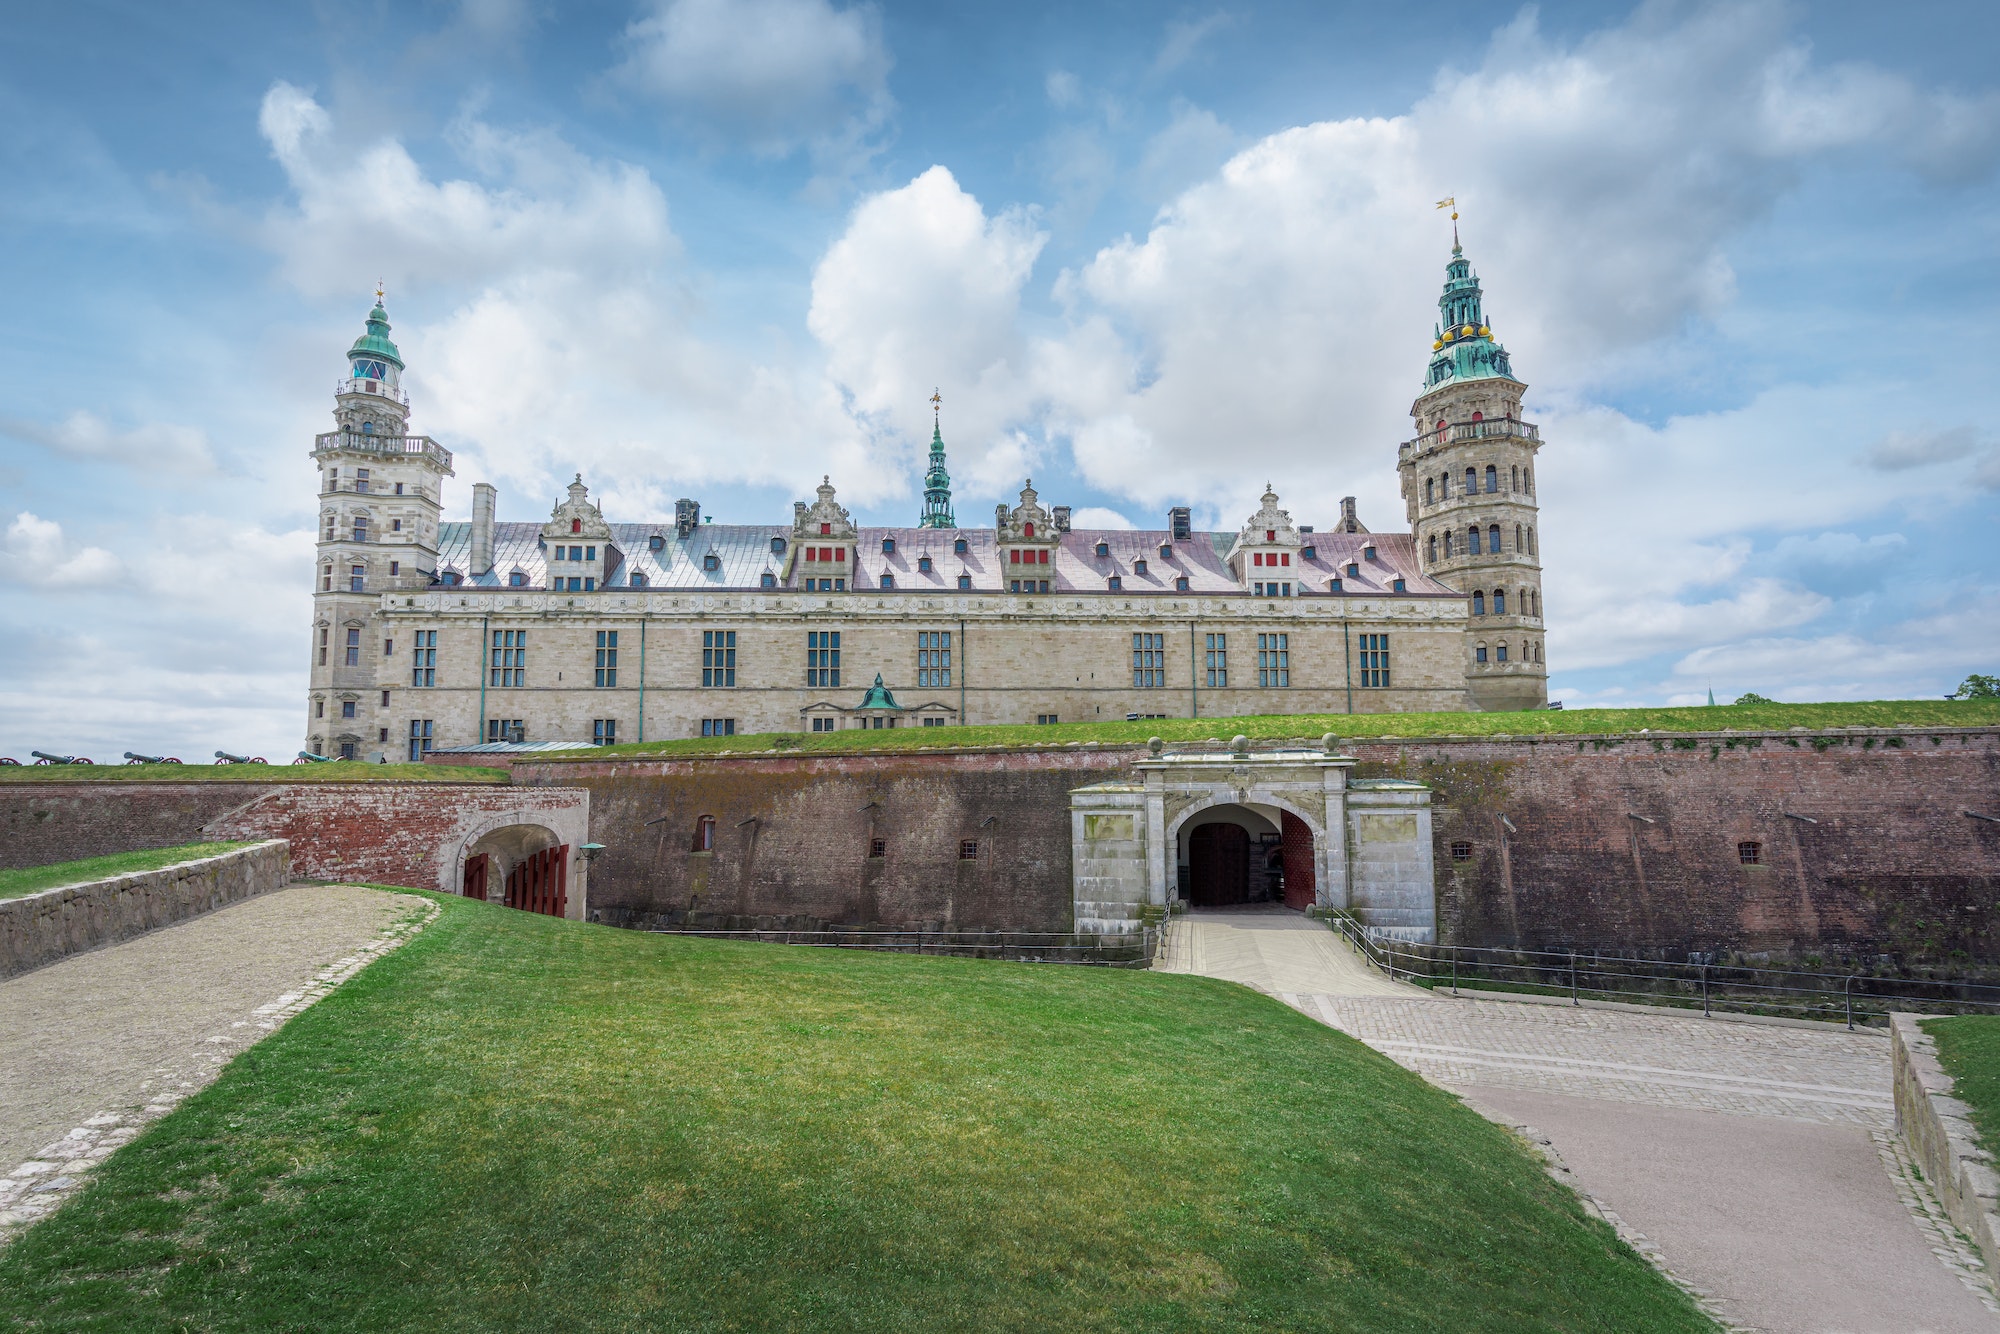 Kronborg Castle - the castle where the Shakespeare play Hamlet takes place - Helsingor, Denmark